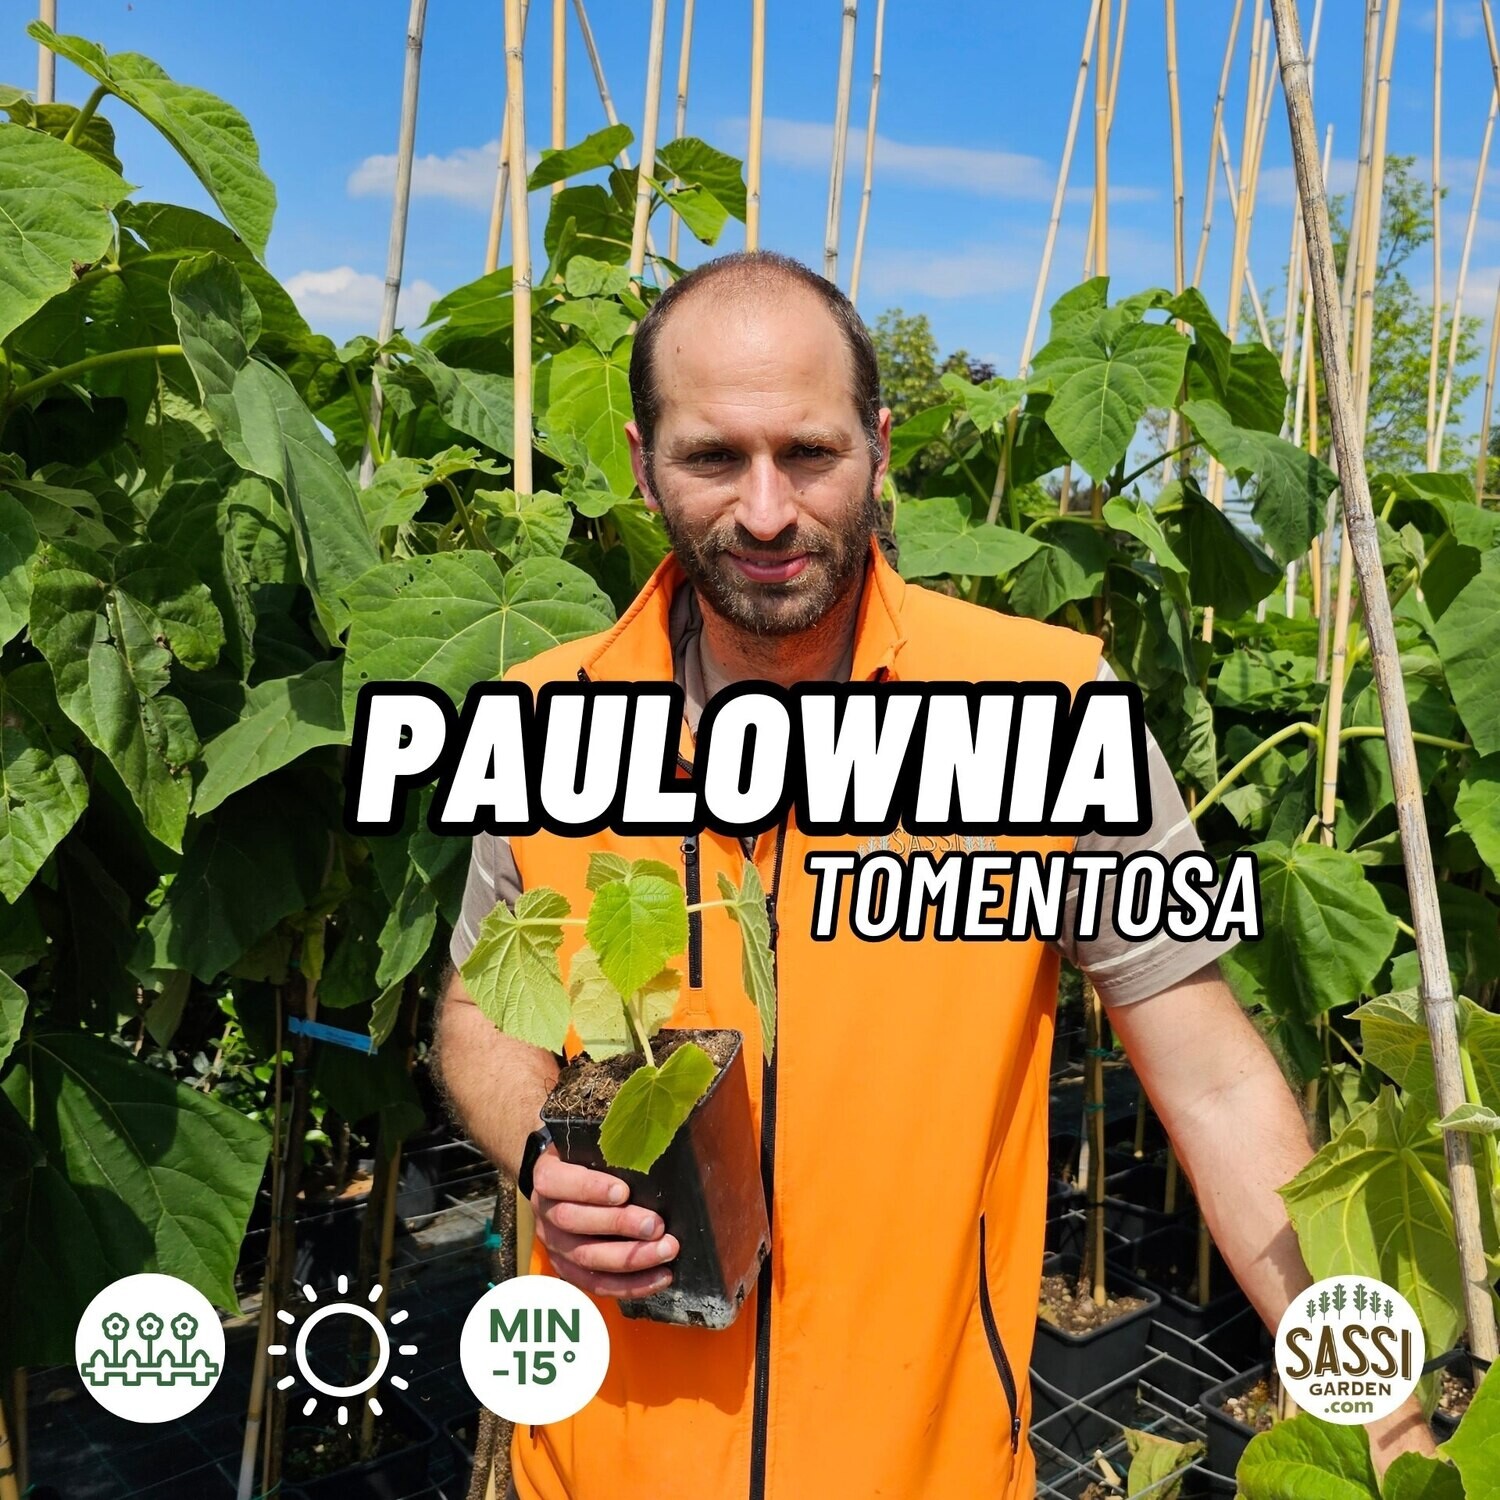 Paulownia Tomentosa, Paulonia, Pawlonia, Albero dei fazzoletti, Albero imperiale - vaso Ø9 cm, h 30 cm